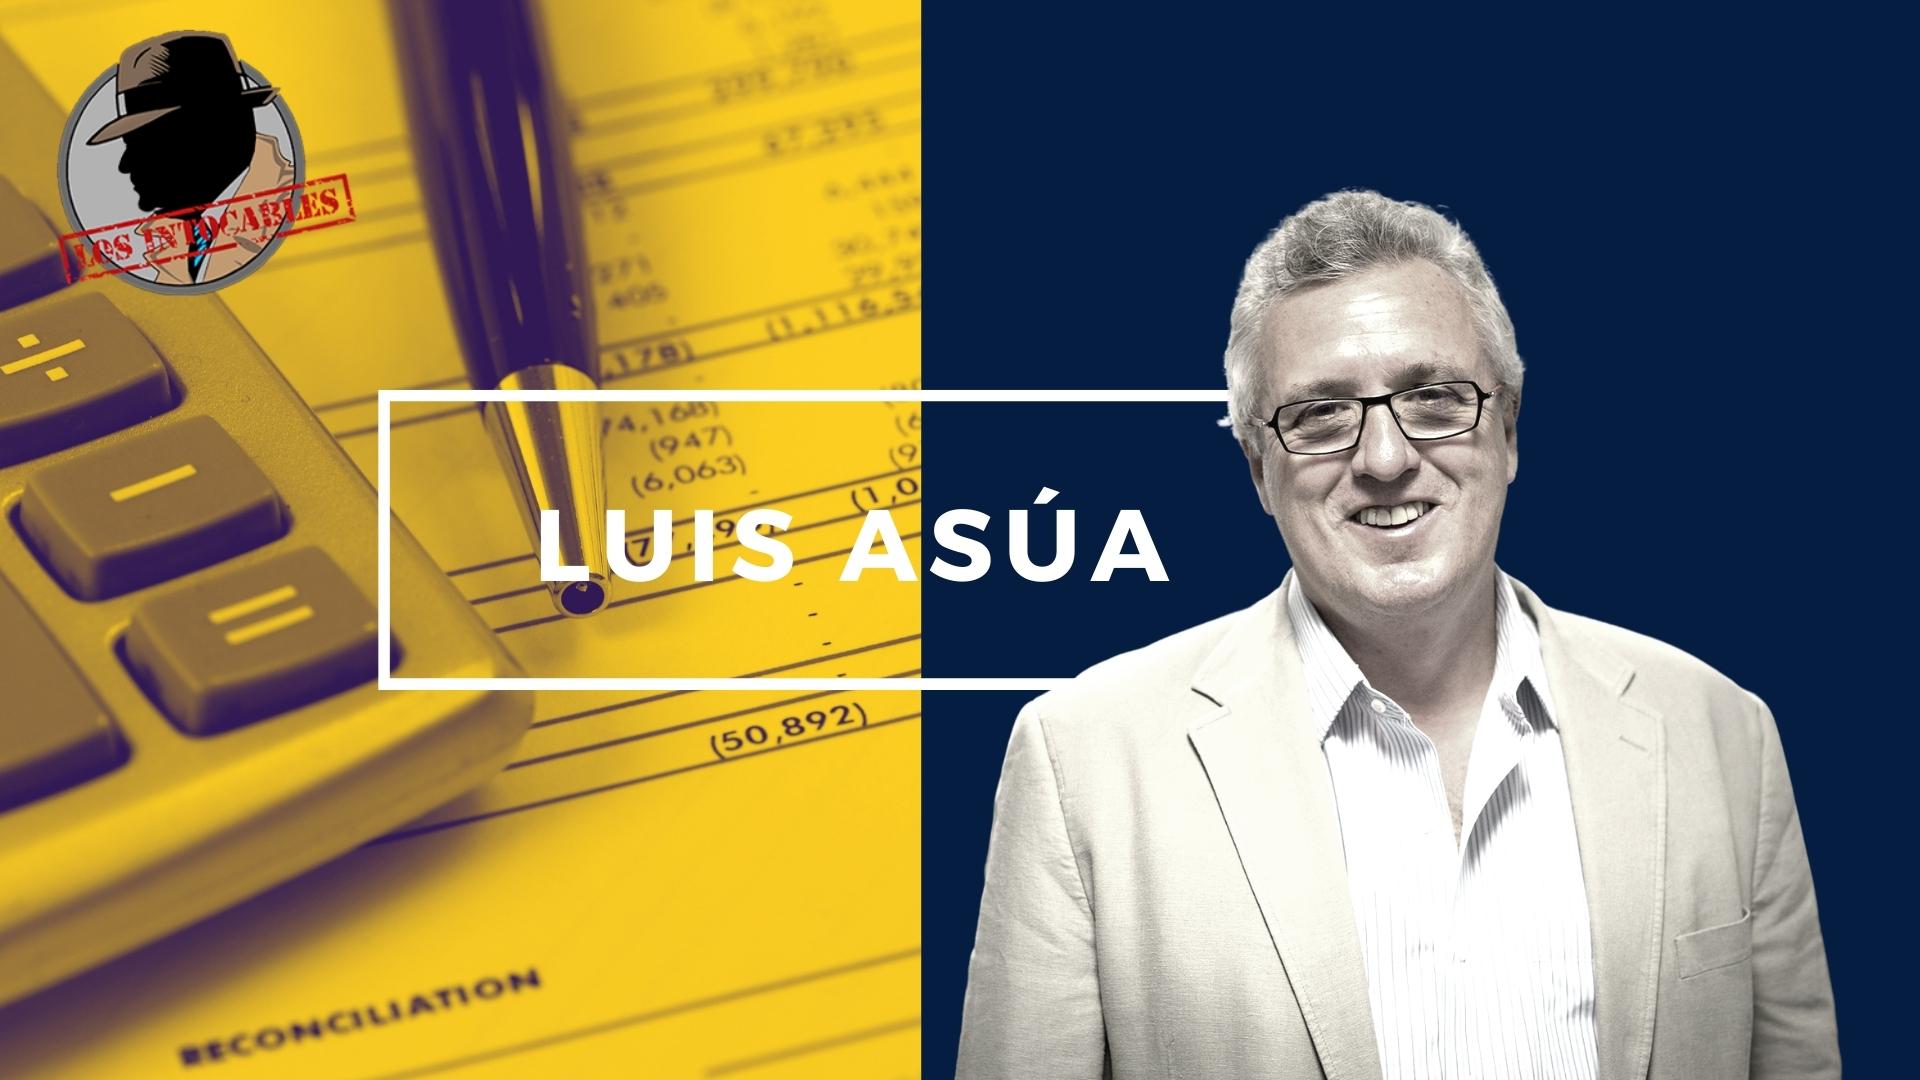 Luis Asua